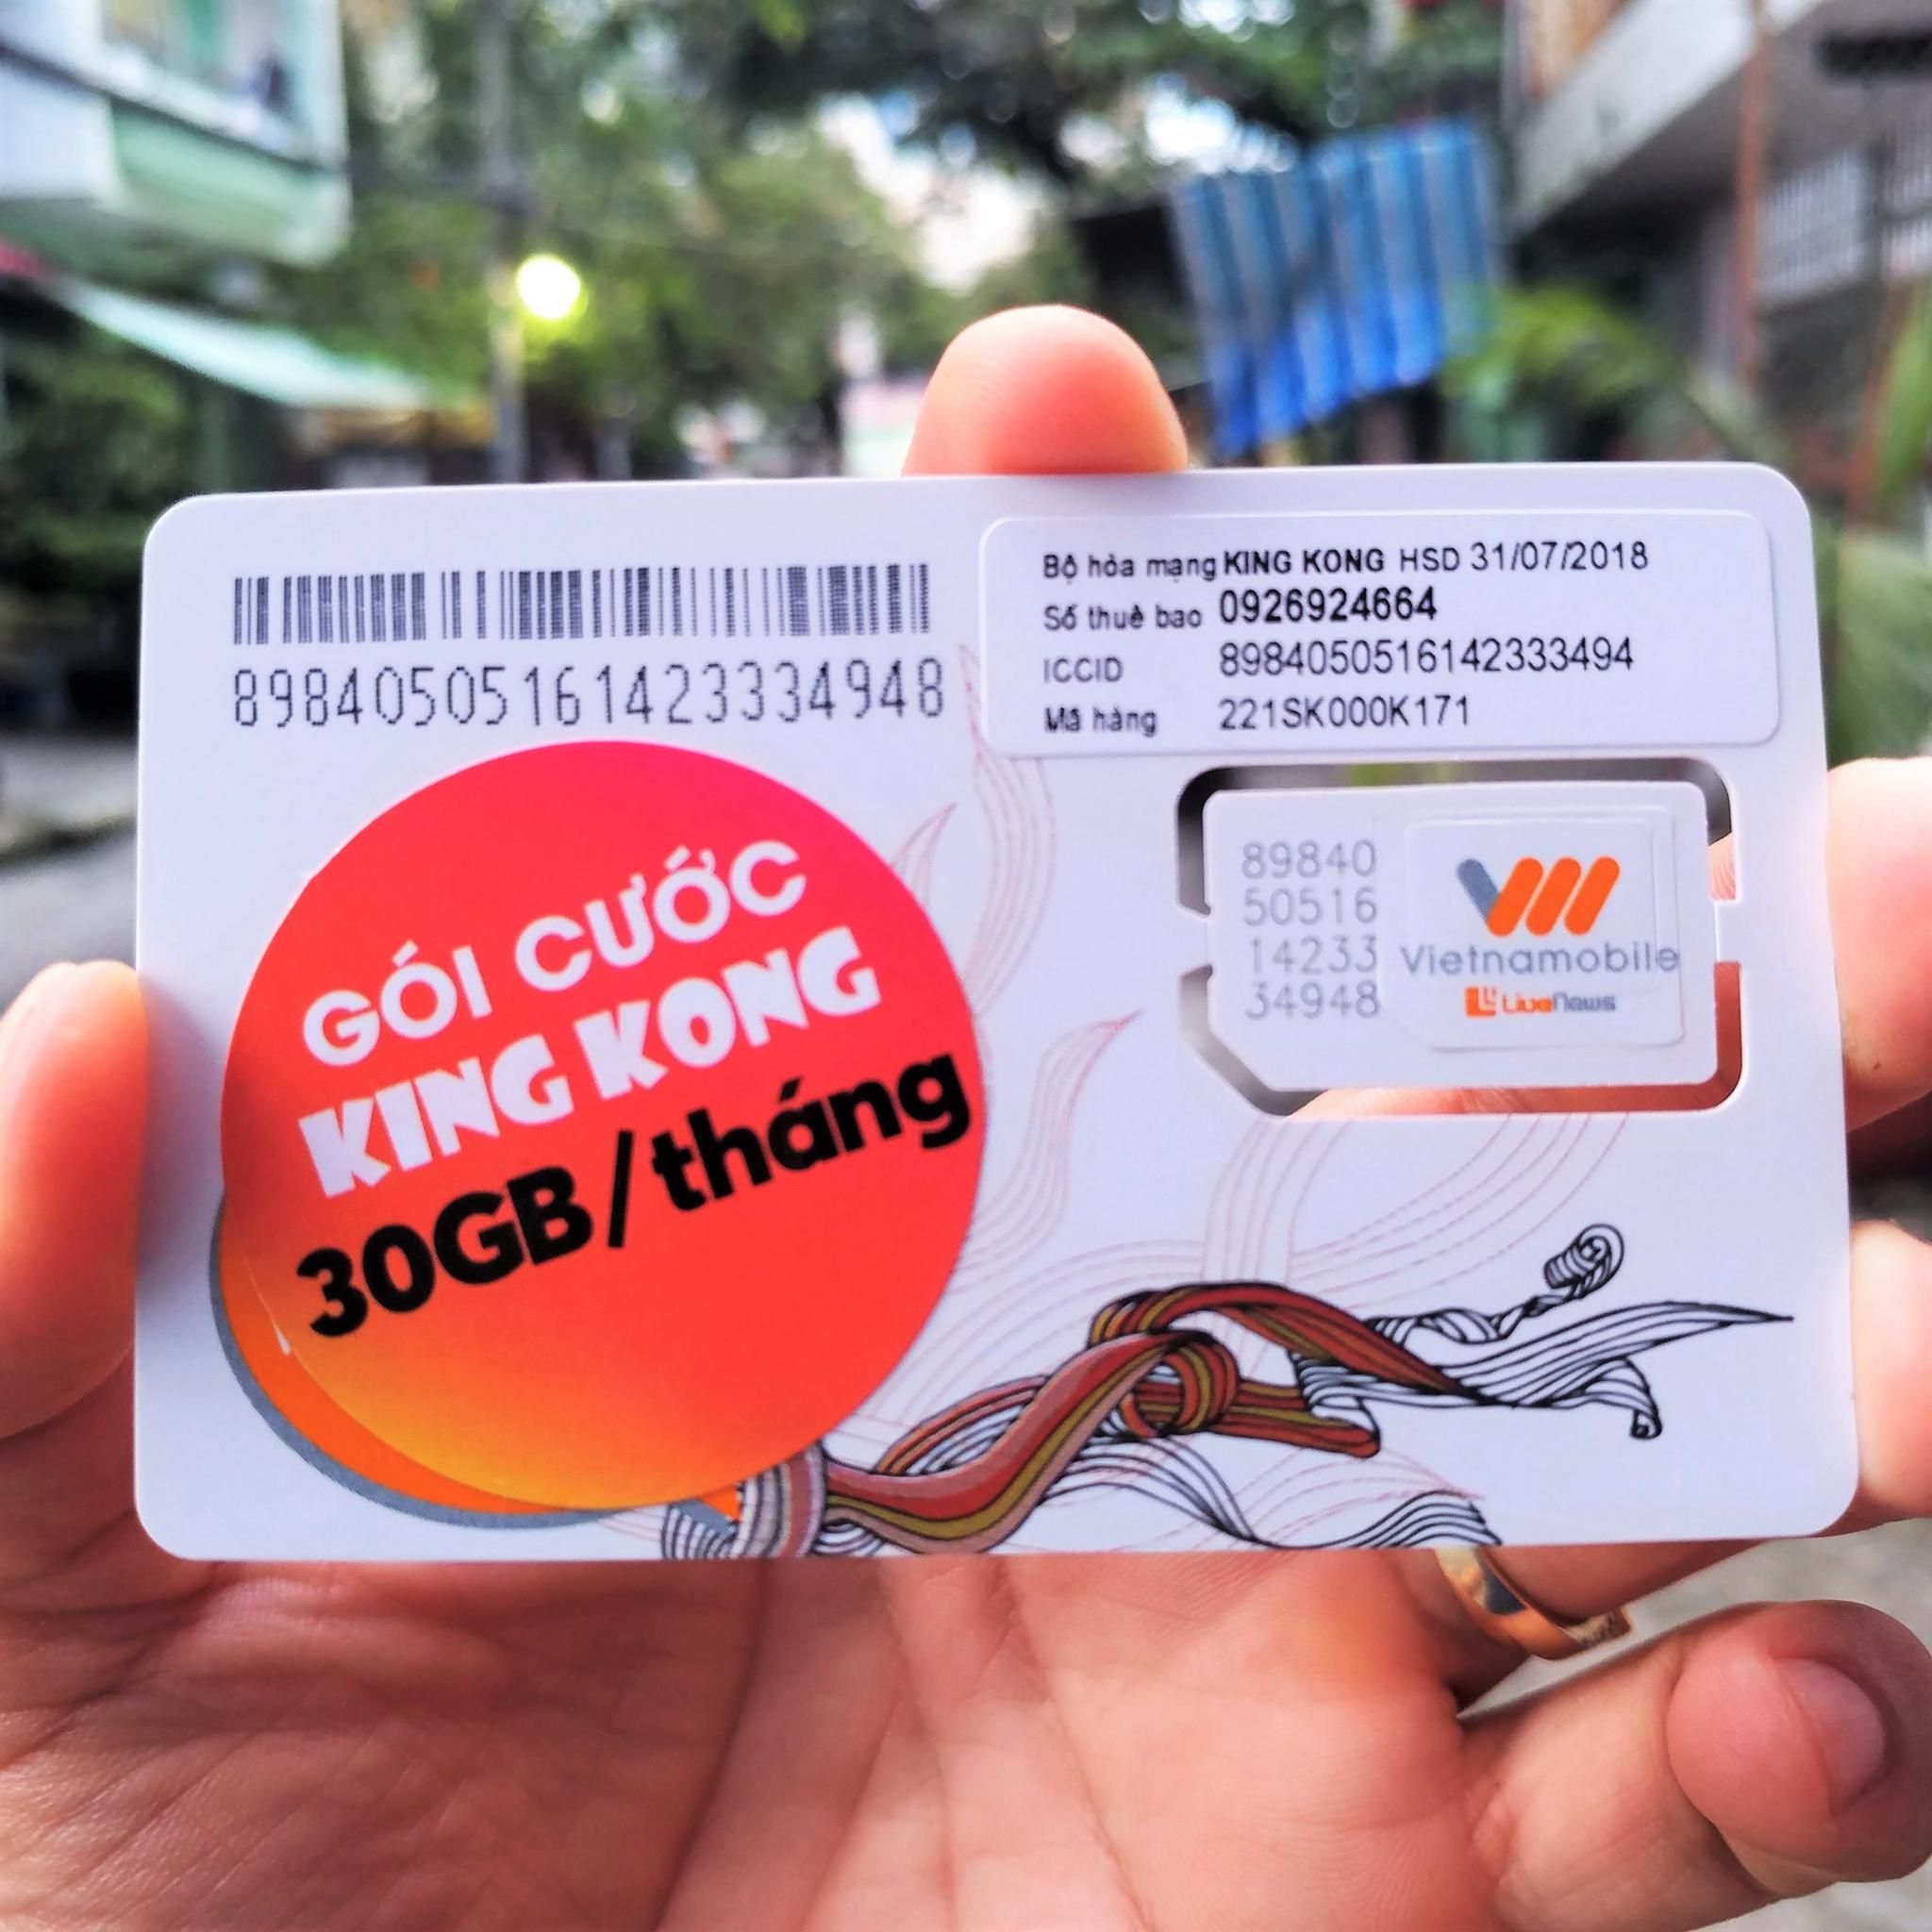 SIM 3G King Kong VietnamMobile tặng 30GB/tháng (1GB/ngày)